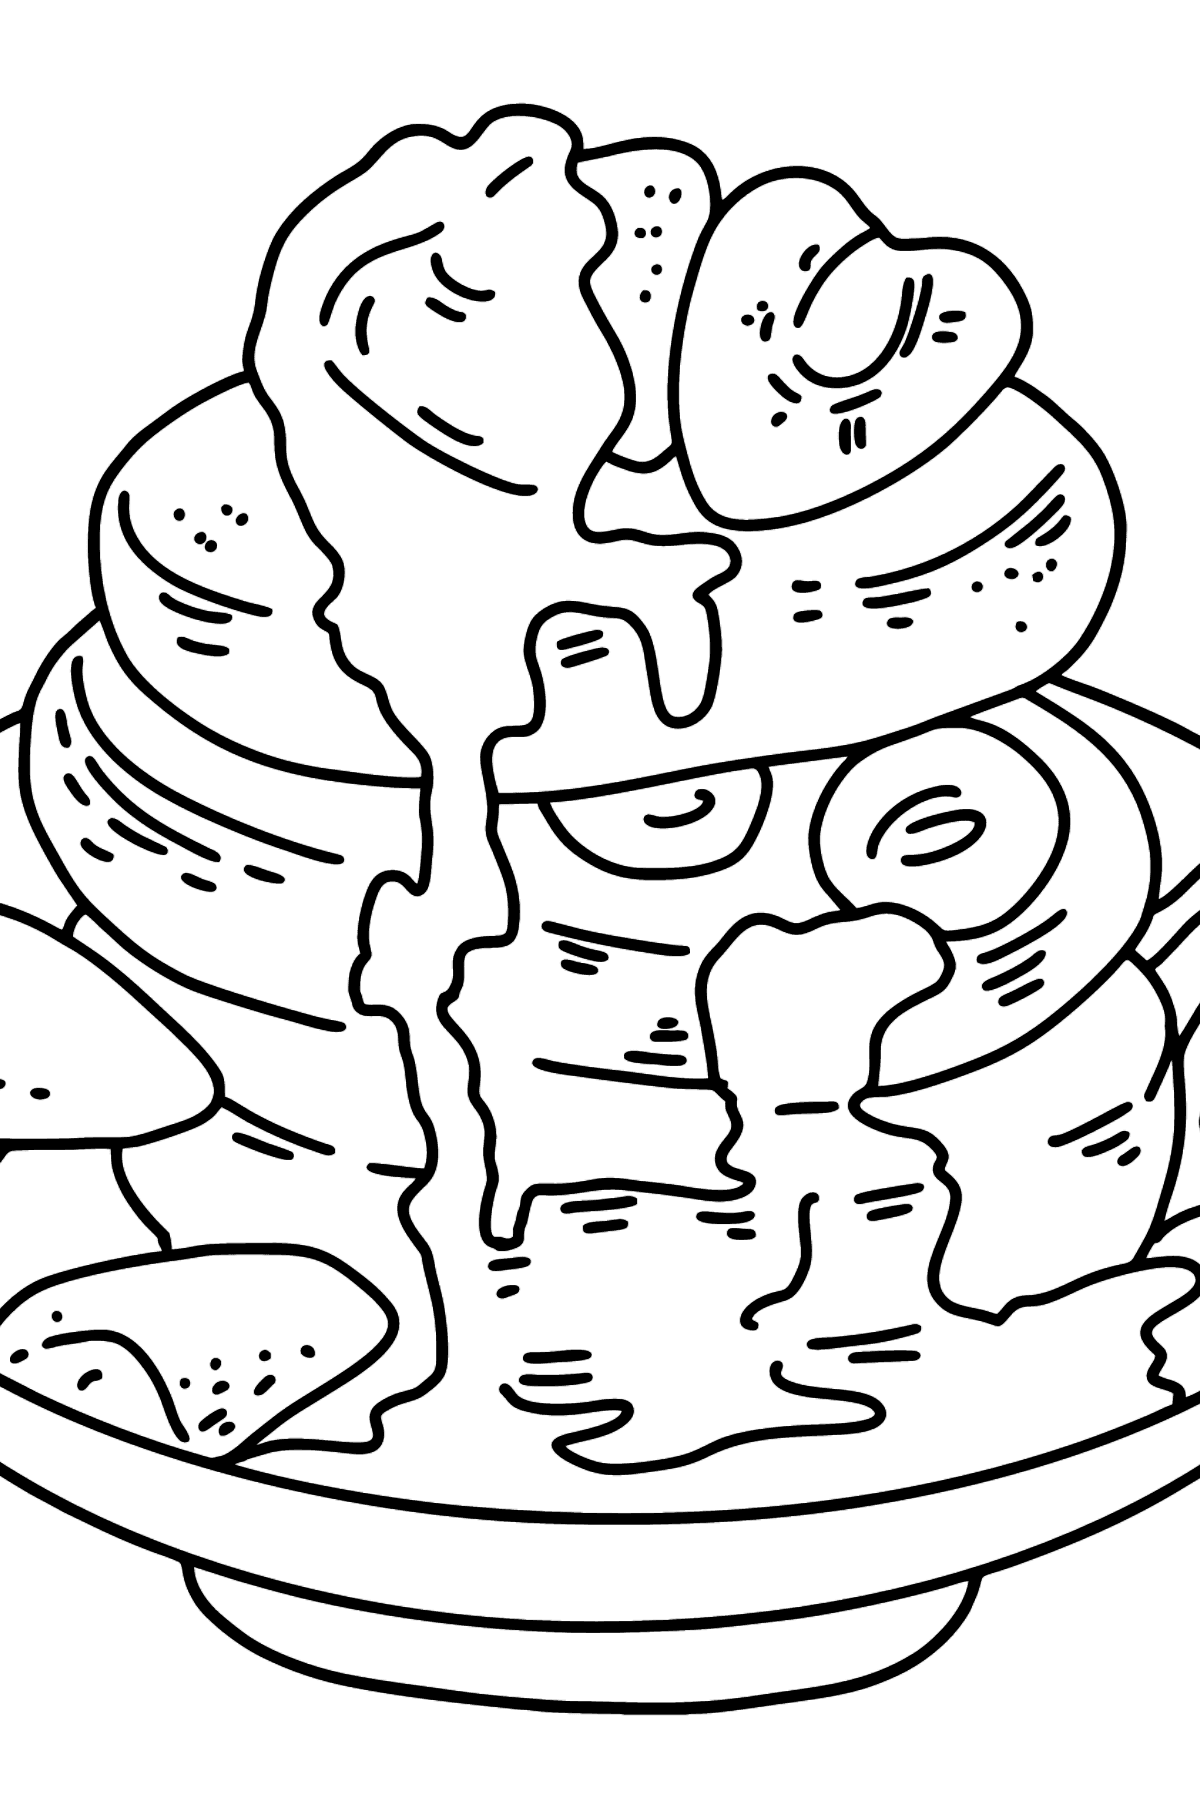 Розмальовка Сніданок - Млинці з медом - Розмальовки для дітей